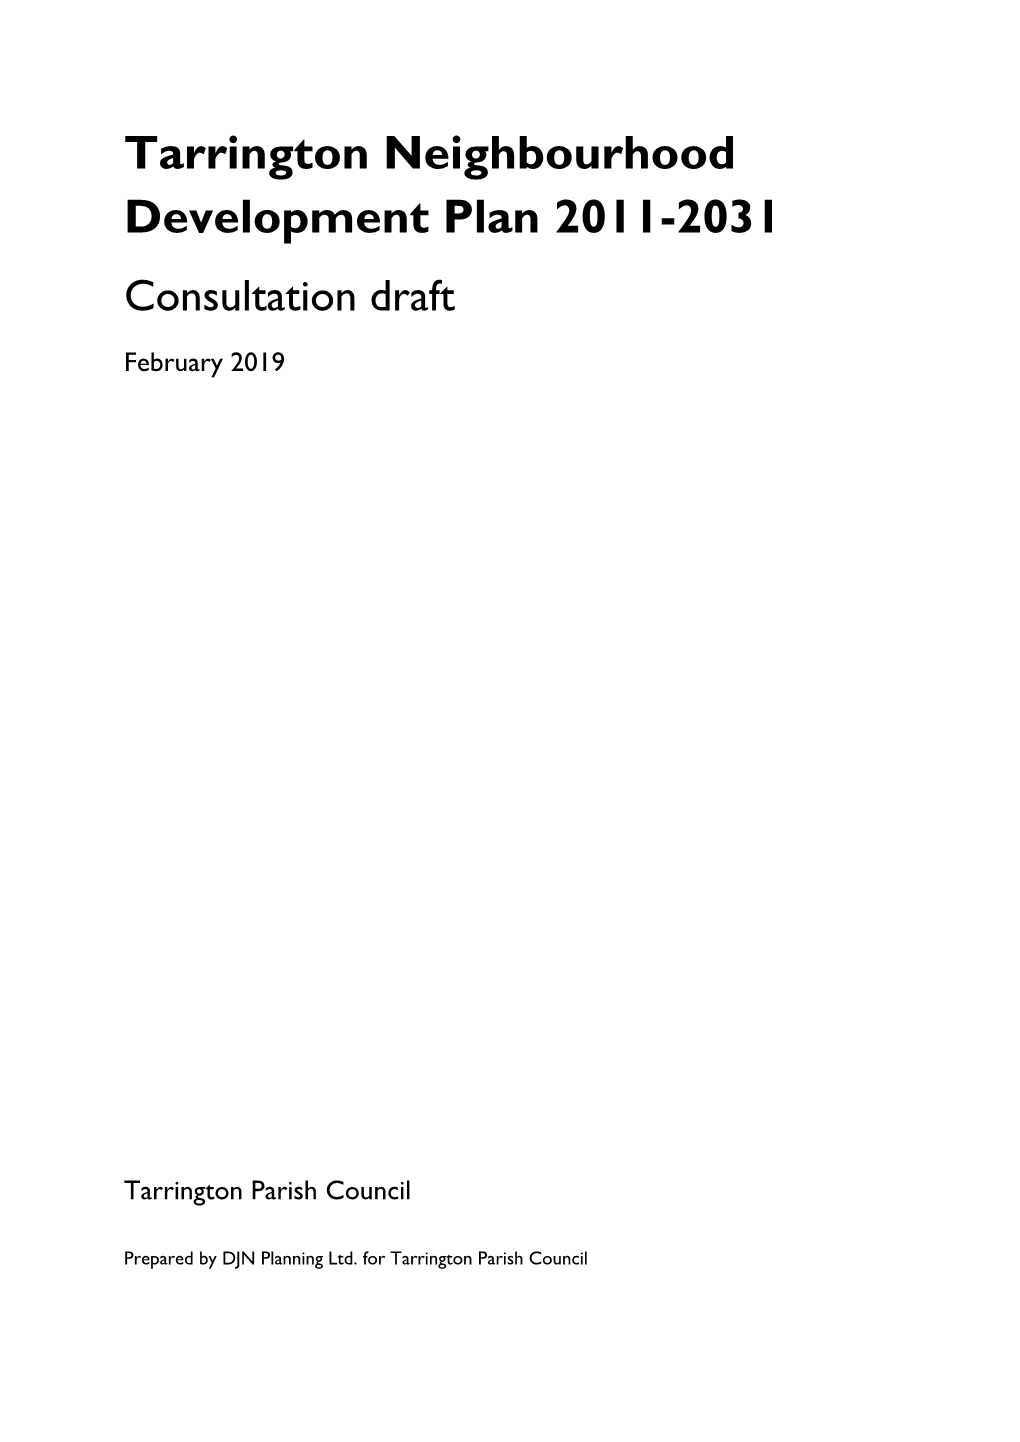 Tarrington Neighbourhood Development Plan February 2019